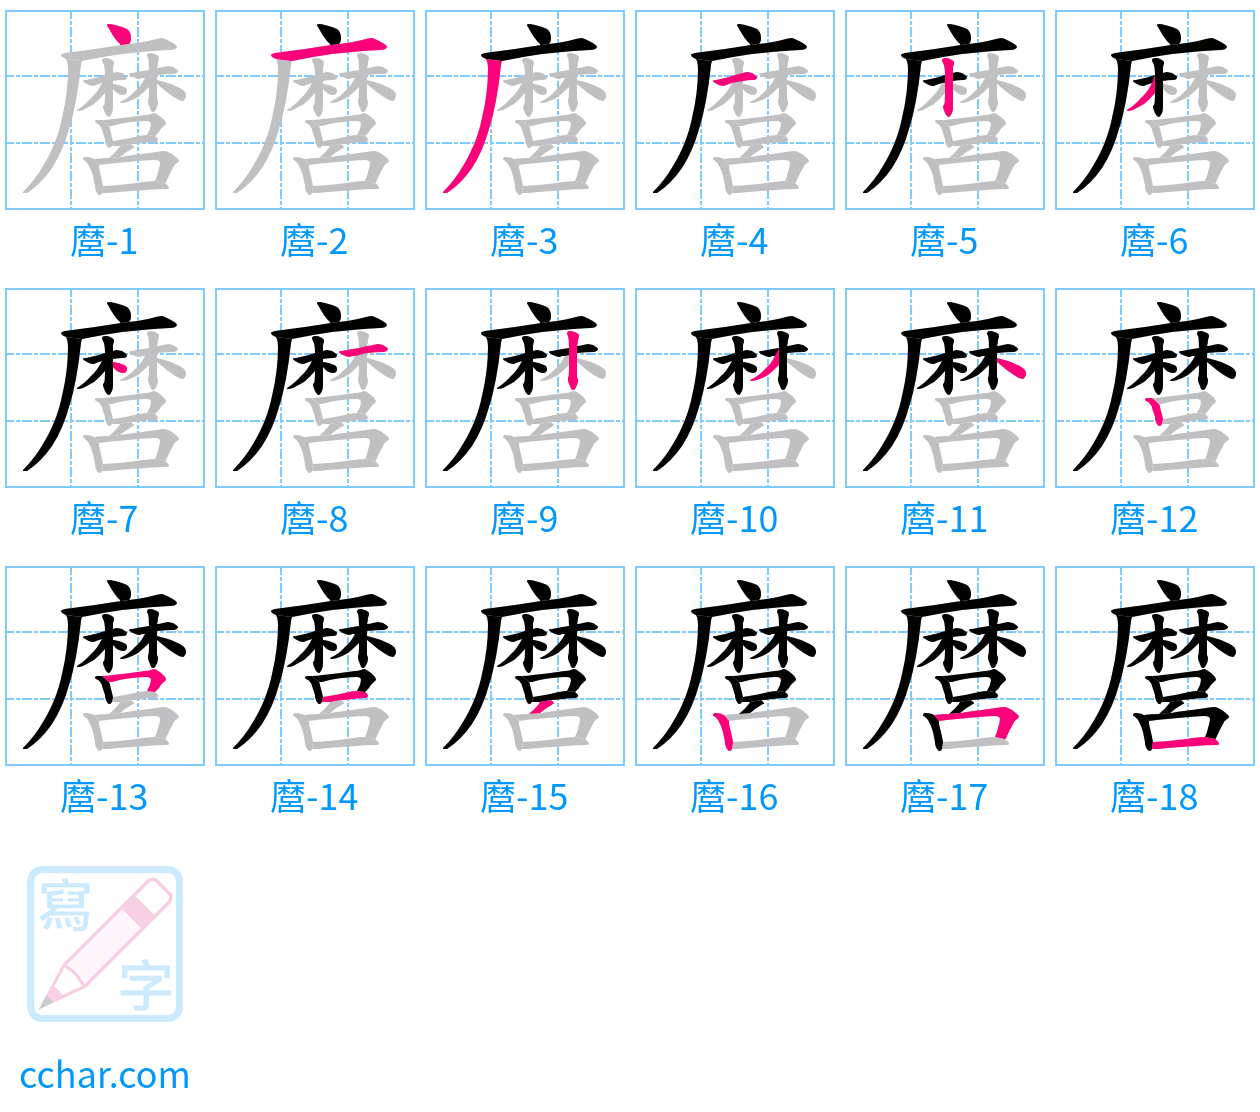 麿 stroke order step-by-step diagram